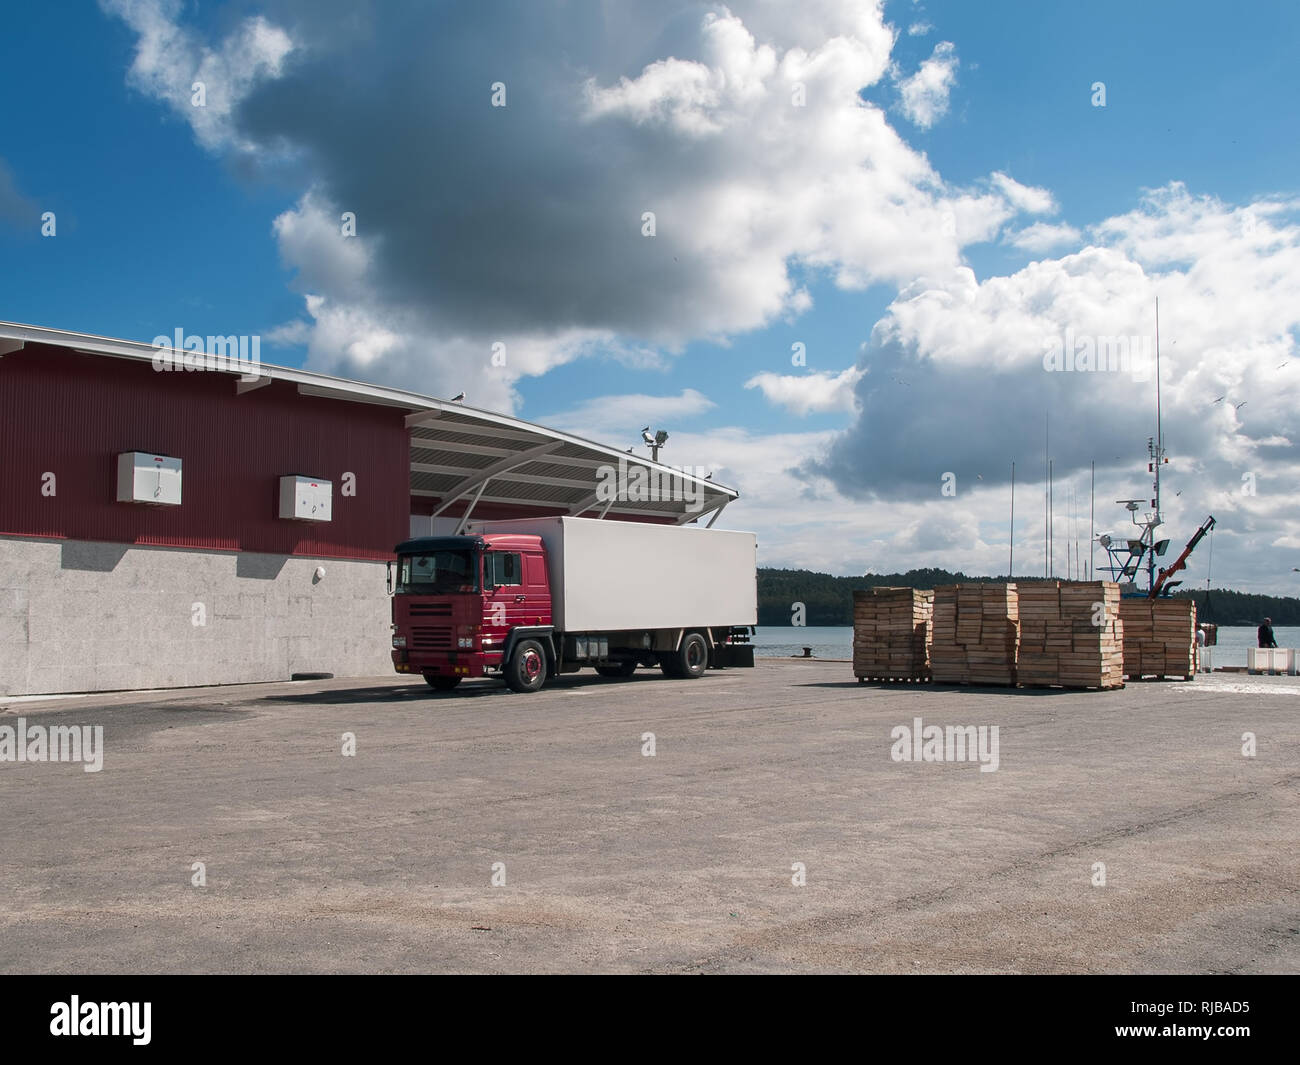 Industria della pesca. Porto di pesca con carrello e casse di legno pronta per il trasporto Foto Stock